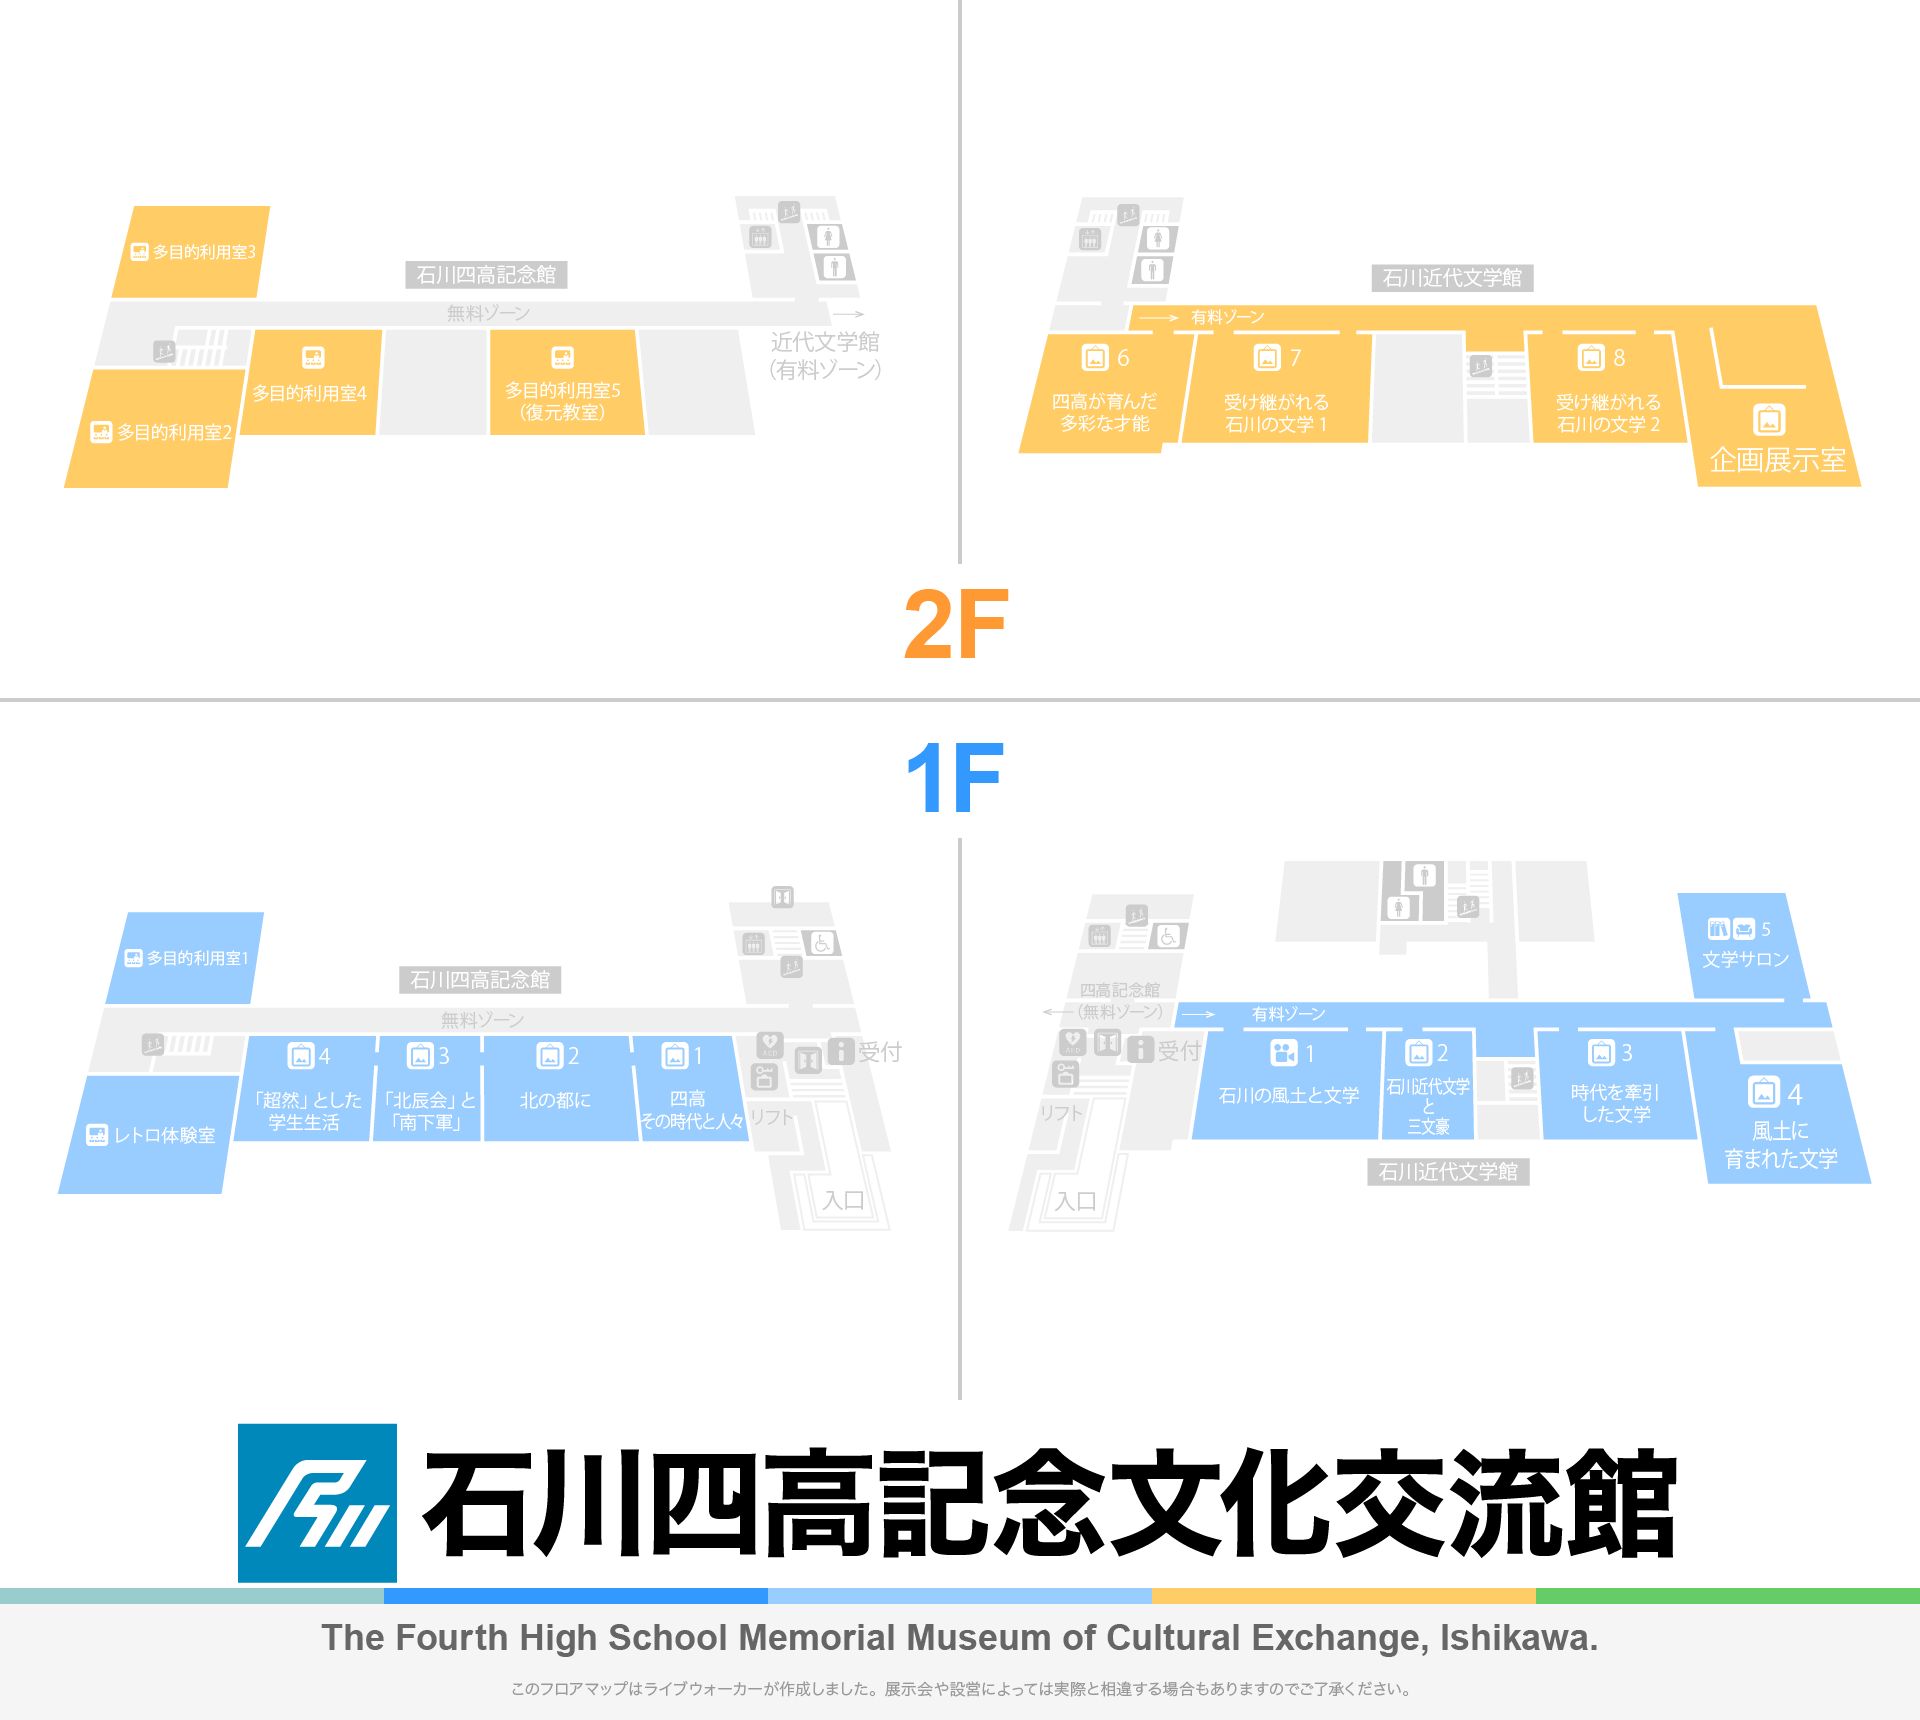 石川四高記念文化交流館のフロアマップ・ミュージアム